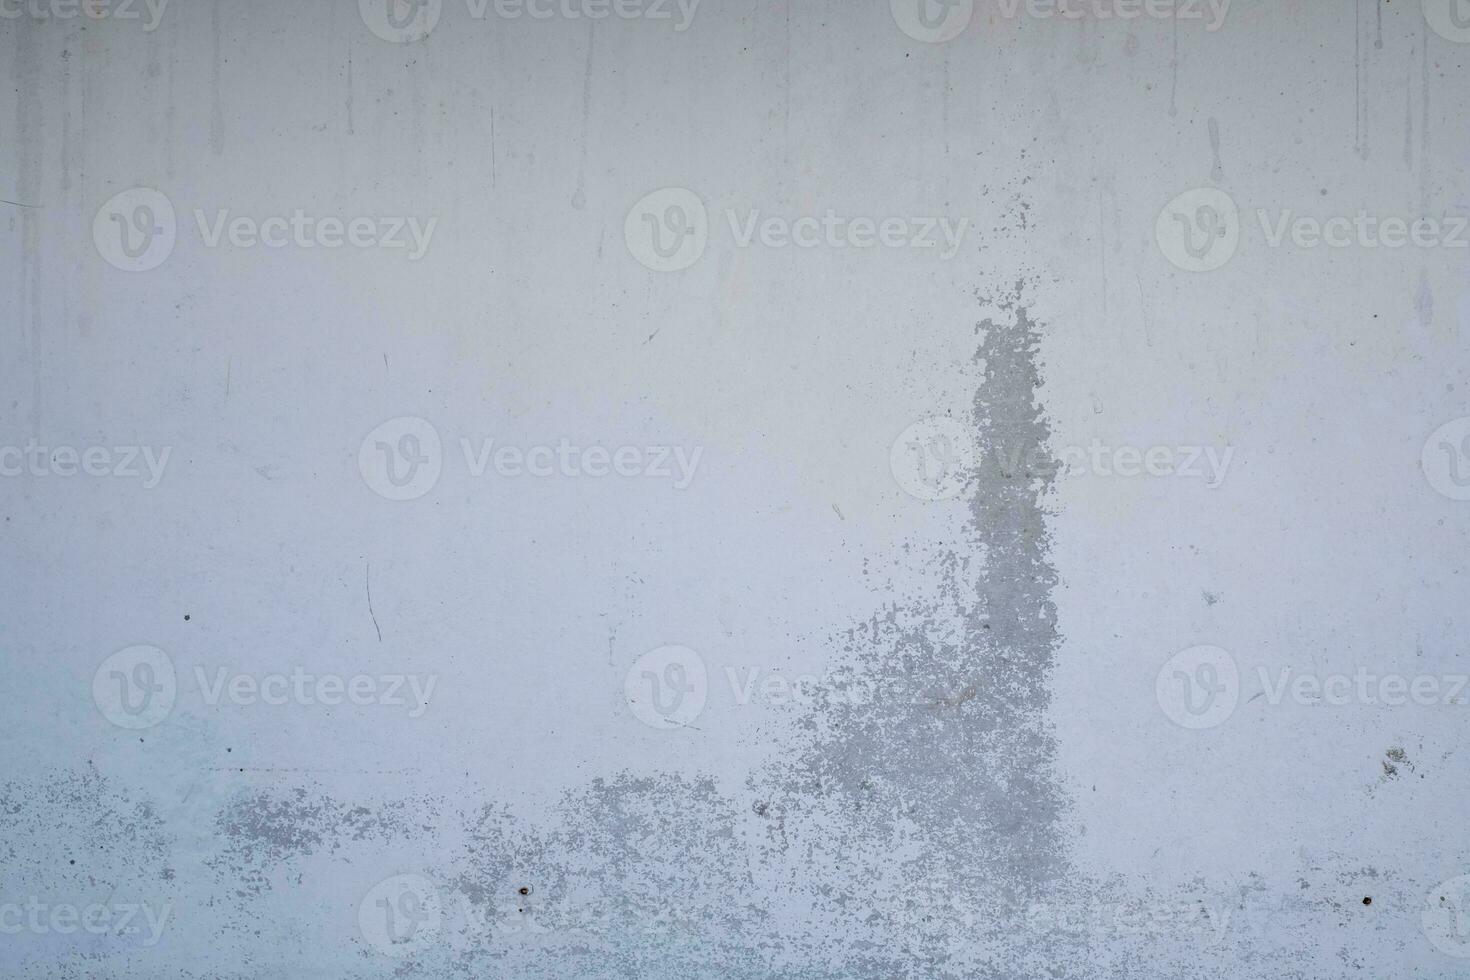 alte betonwand in schwarz-weißer farbe, zementwand, gebrochene wand, hintergrundtextur foto